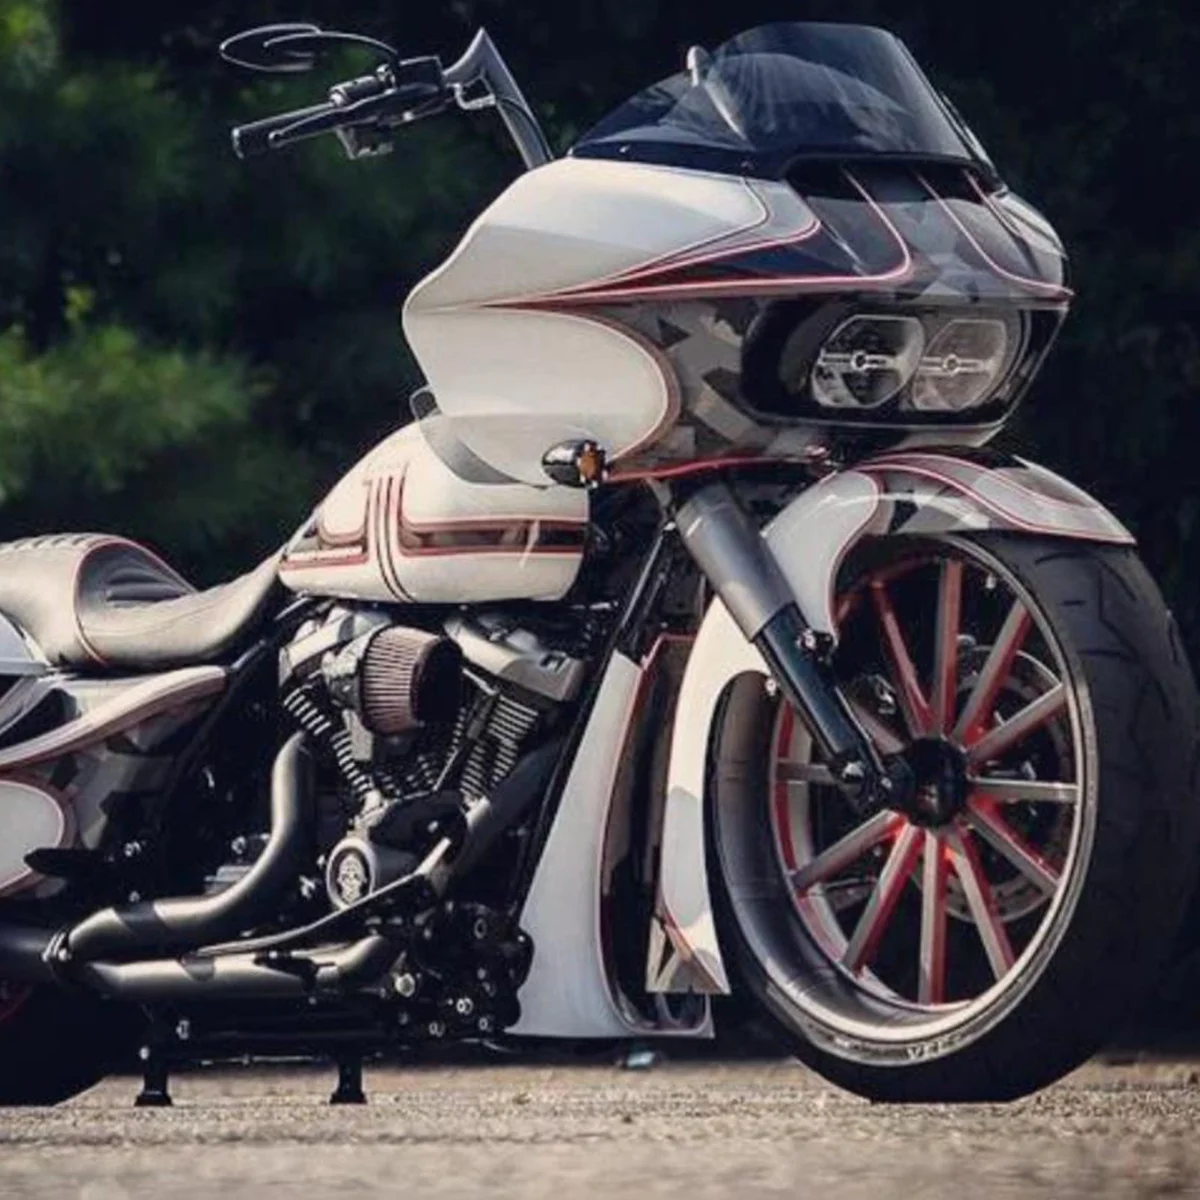 Bulldog Centerfold fat tire wheel on a Harley Davidson bagger